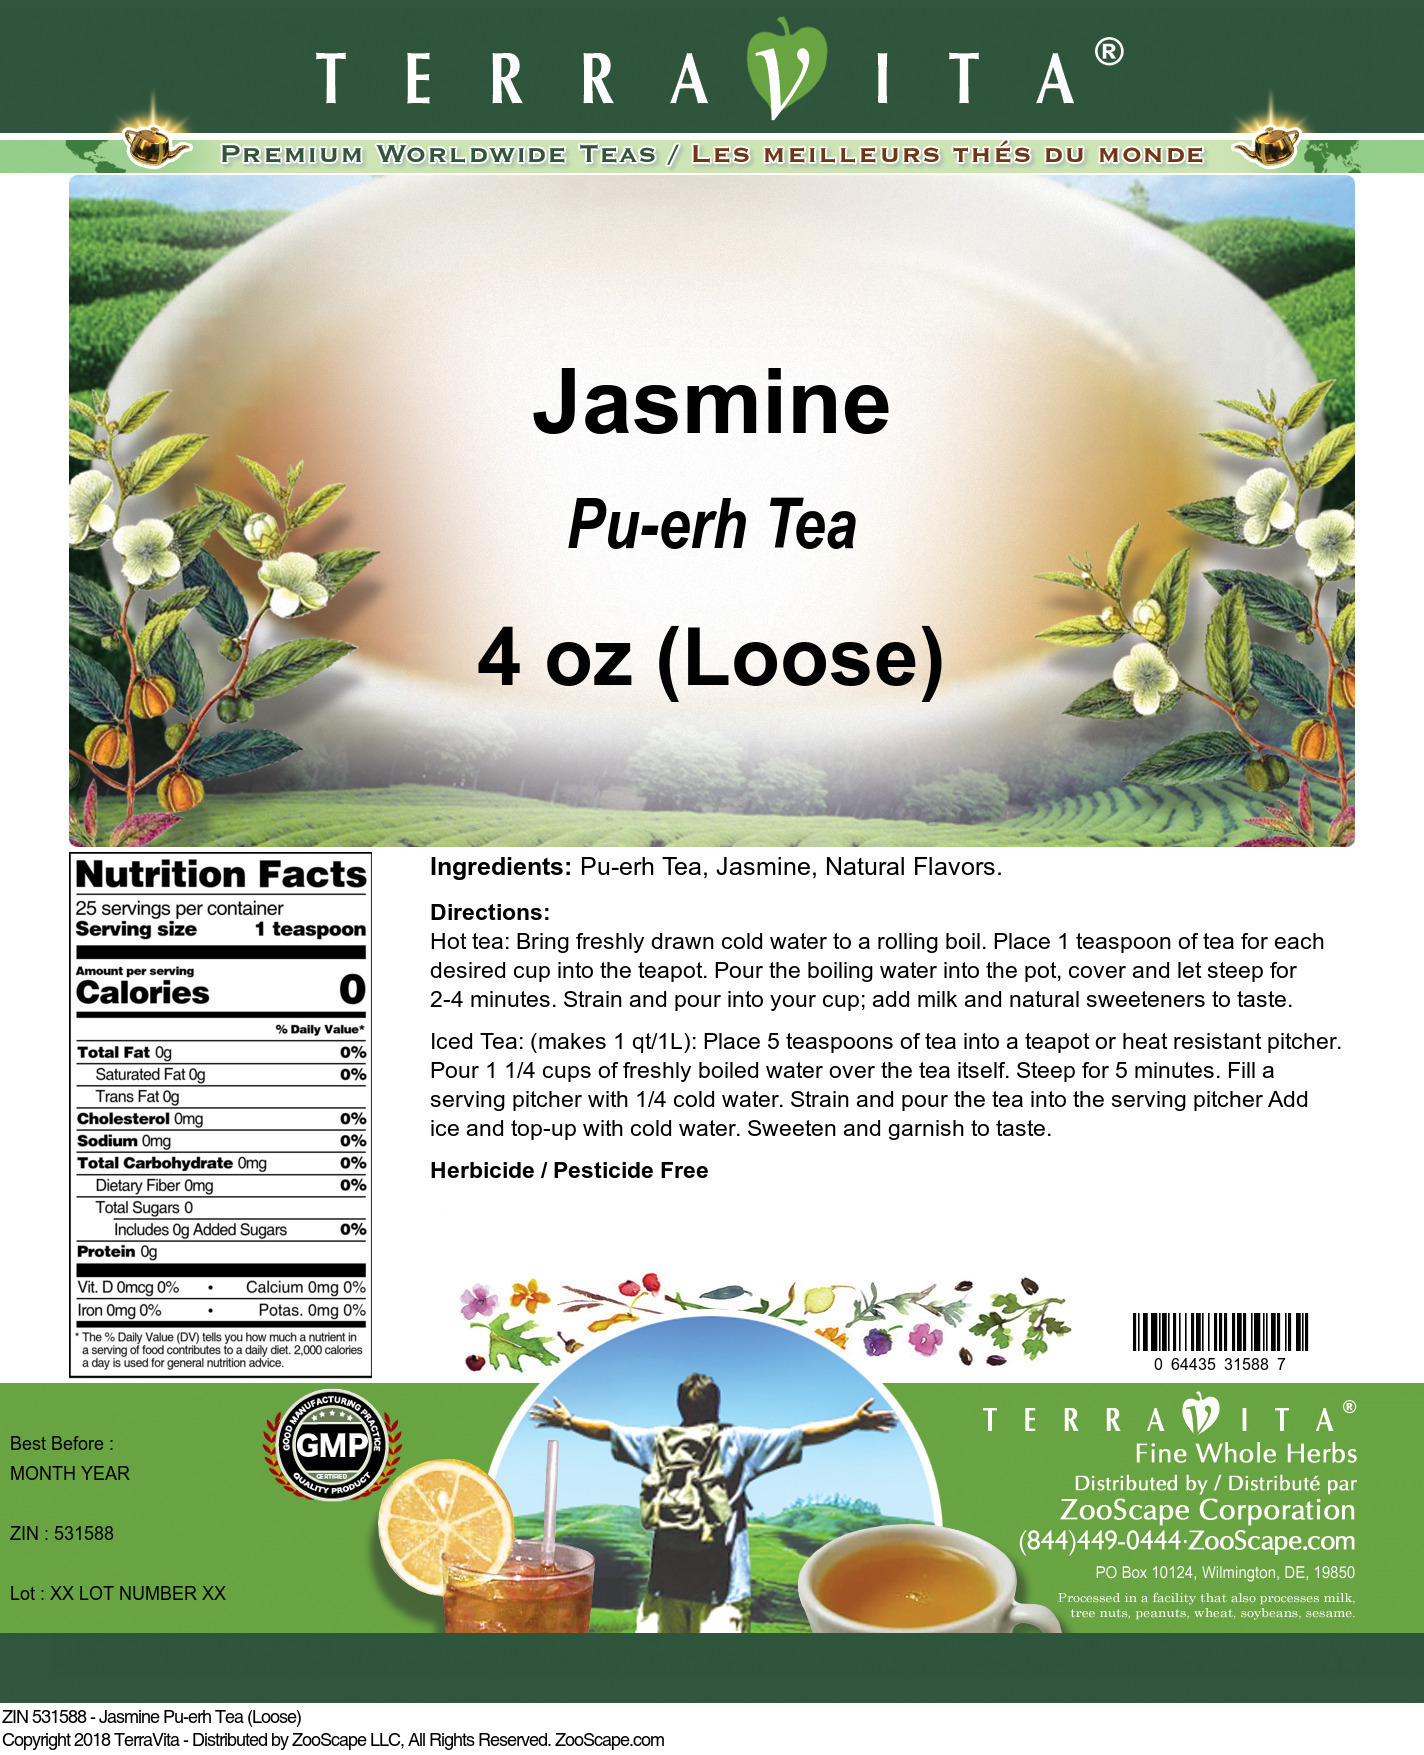 Jasmine Pu-erh Tea (Loose) - Label